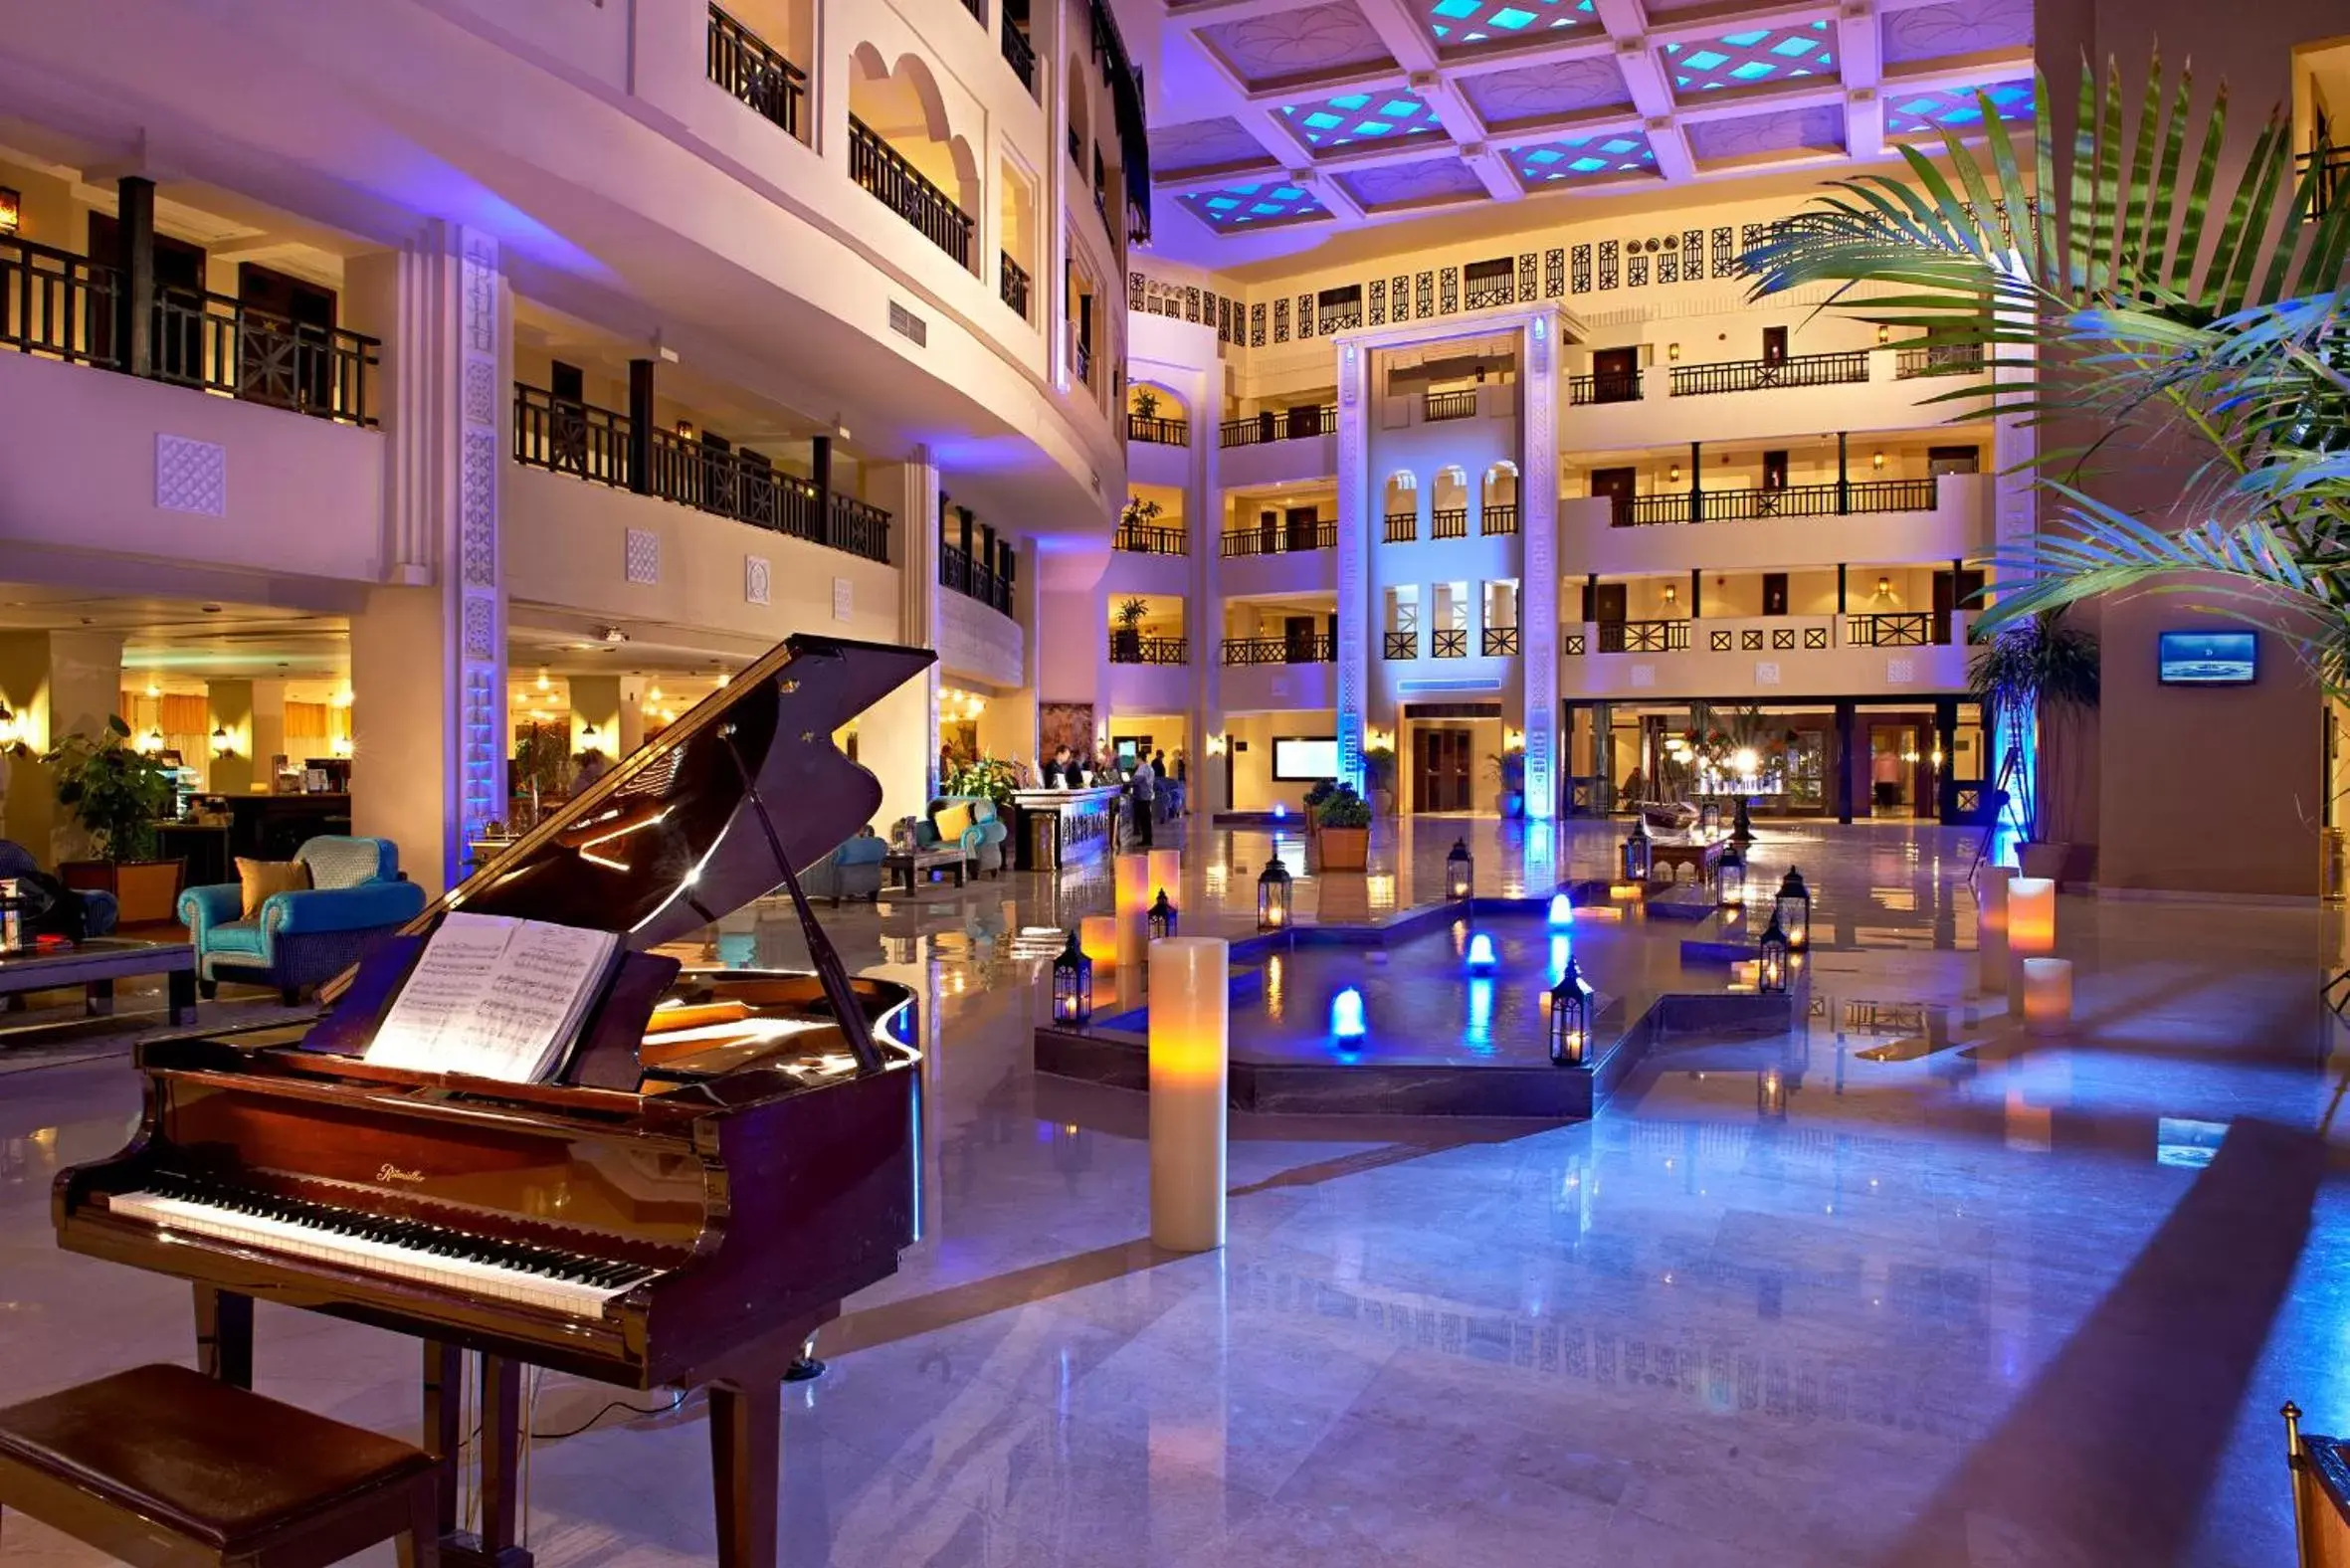 Lobby or reception in Steigenberger Aldau Beach Hotel